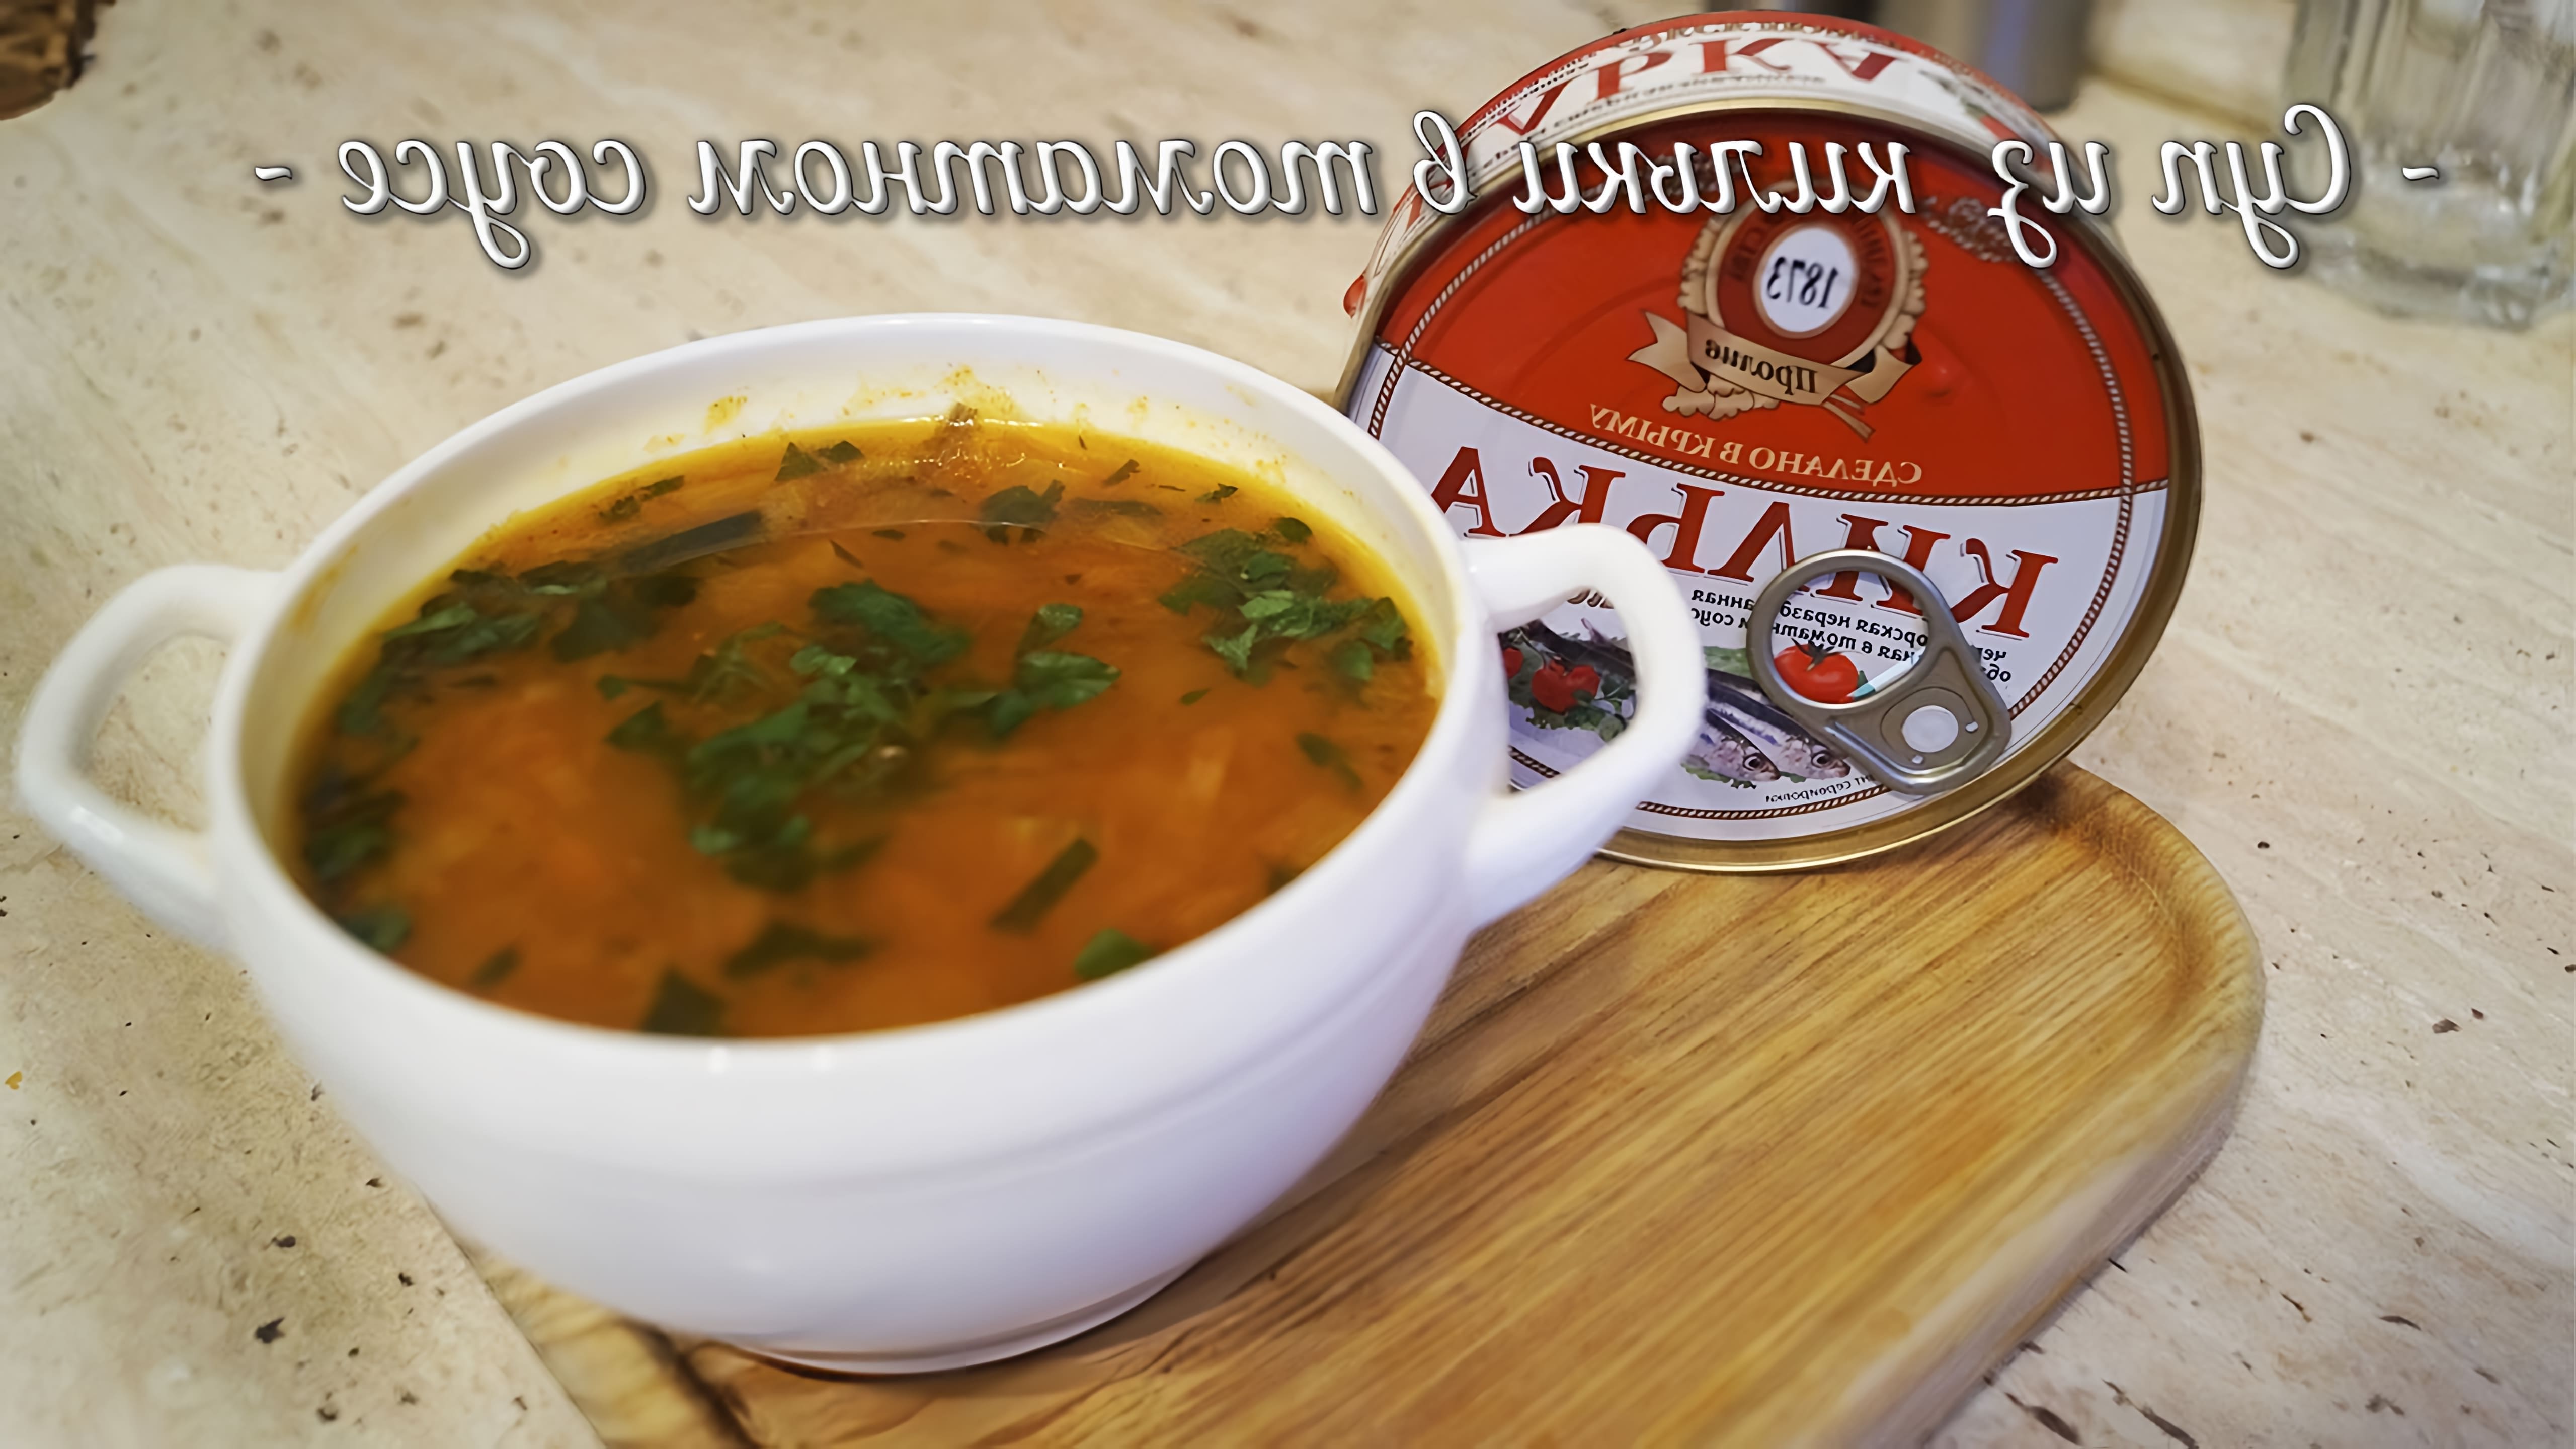 Видео как приготовить бюджетный рыбный суп из скумбрии в томатном соусе во время самоизоляции в России из-за пандемии коронавируса